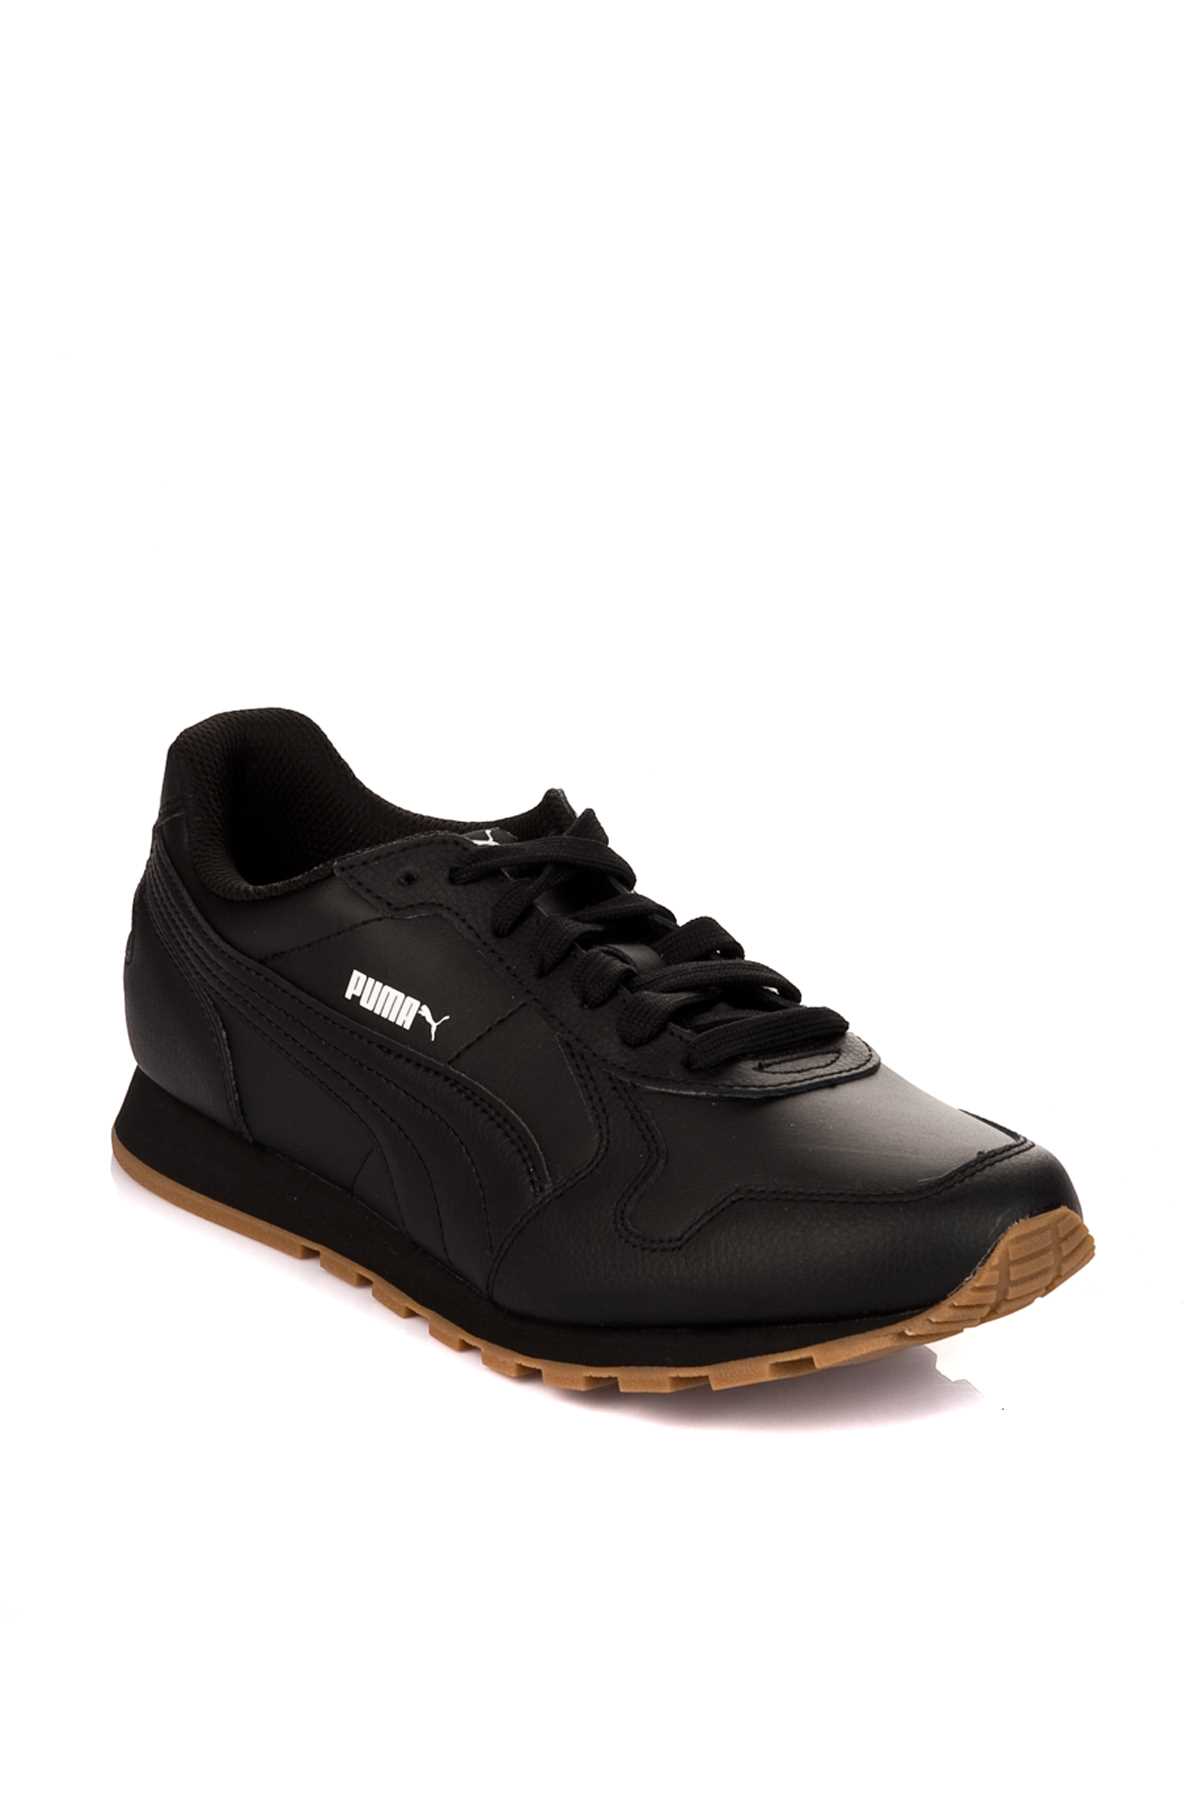 خرید انلاین کفش مخصوص دویدن طرح دار شیک Puma کد ty975748